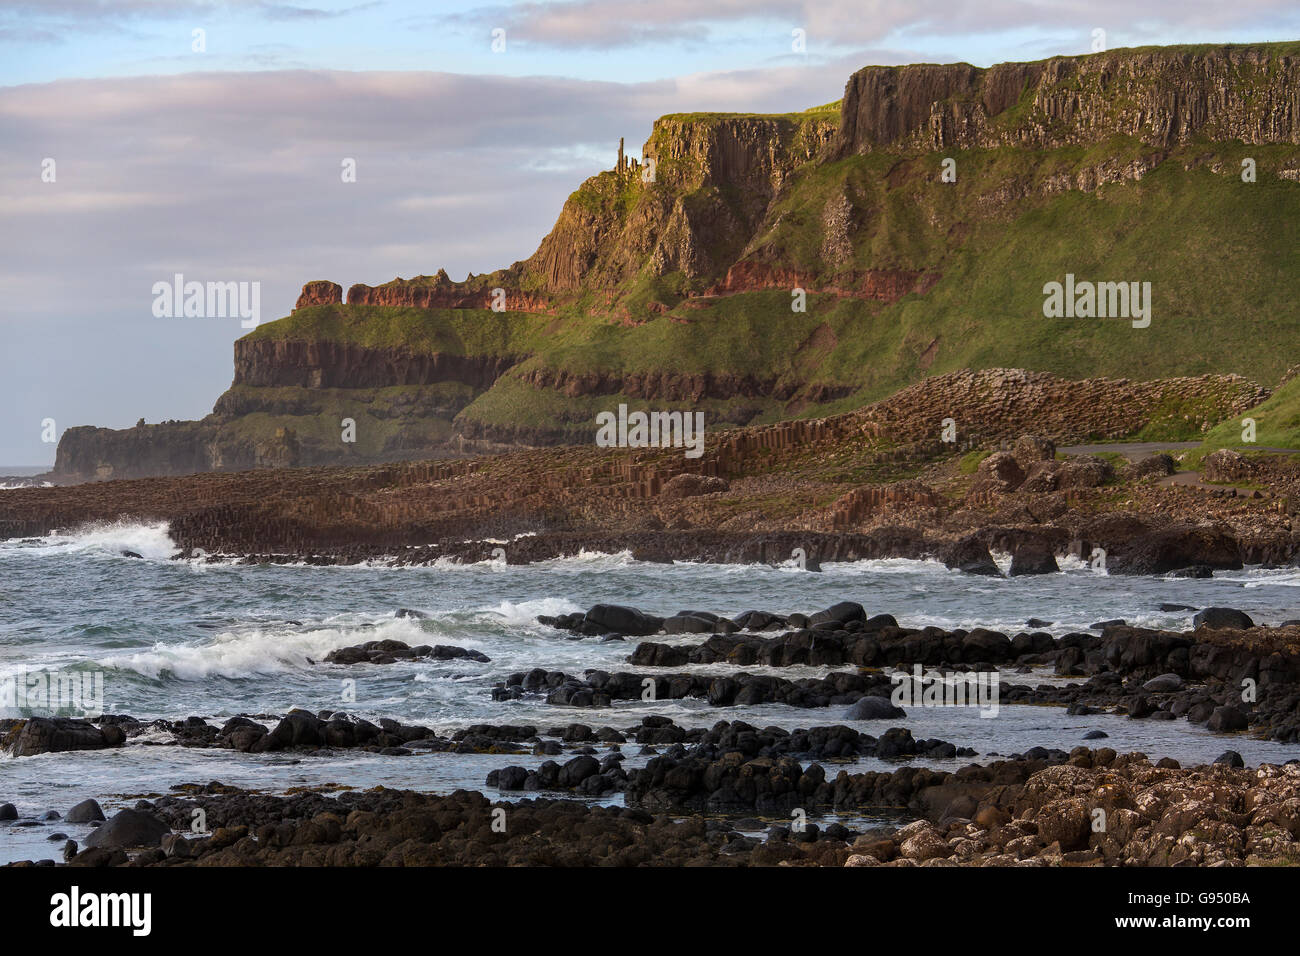 Die Giants Causeway in der Grafschaft Antrim in Nordirland. Ein UNESCO-Weltkulturerbe. Stockfoto